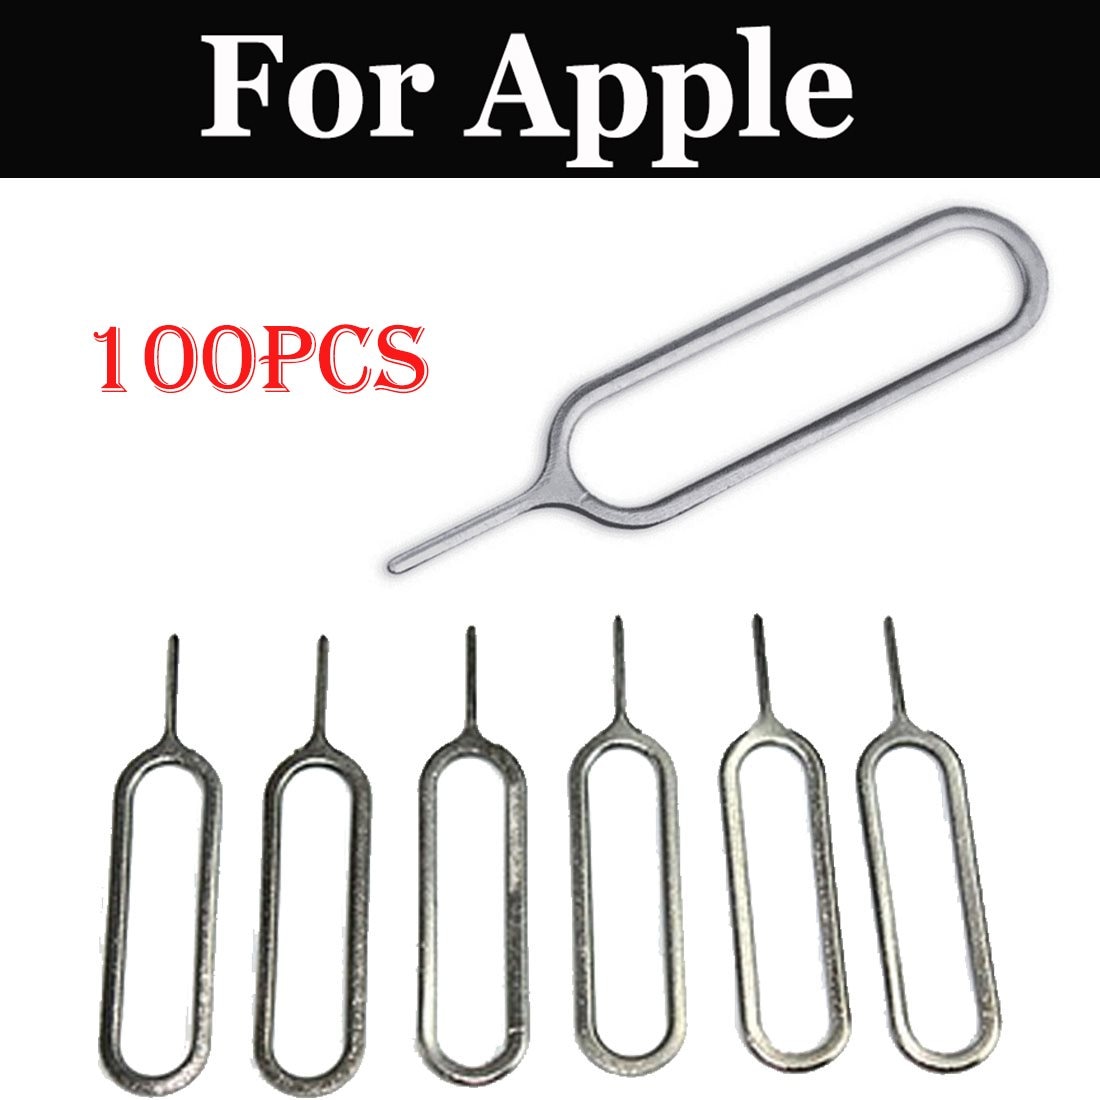 100 stücke Universal- Metall auswerfen Stift Werkzeug Nadel SIM Karten-behälter-Halfter Stoßen Für Apfel iPhone 7 7 Plus SE 8 8 Plus X Xs Xs Max XR